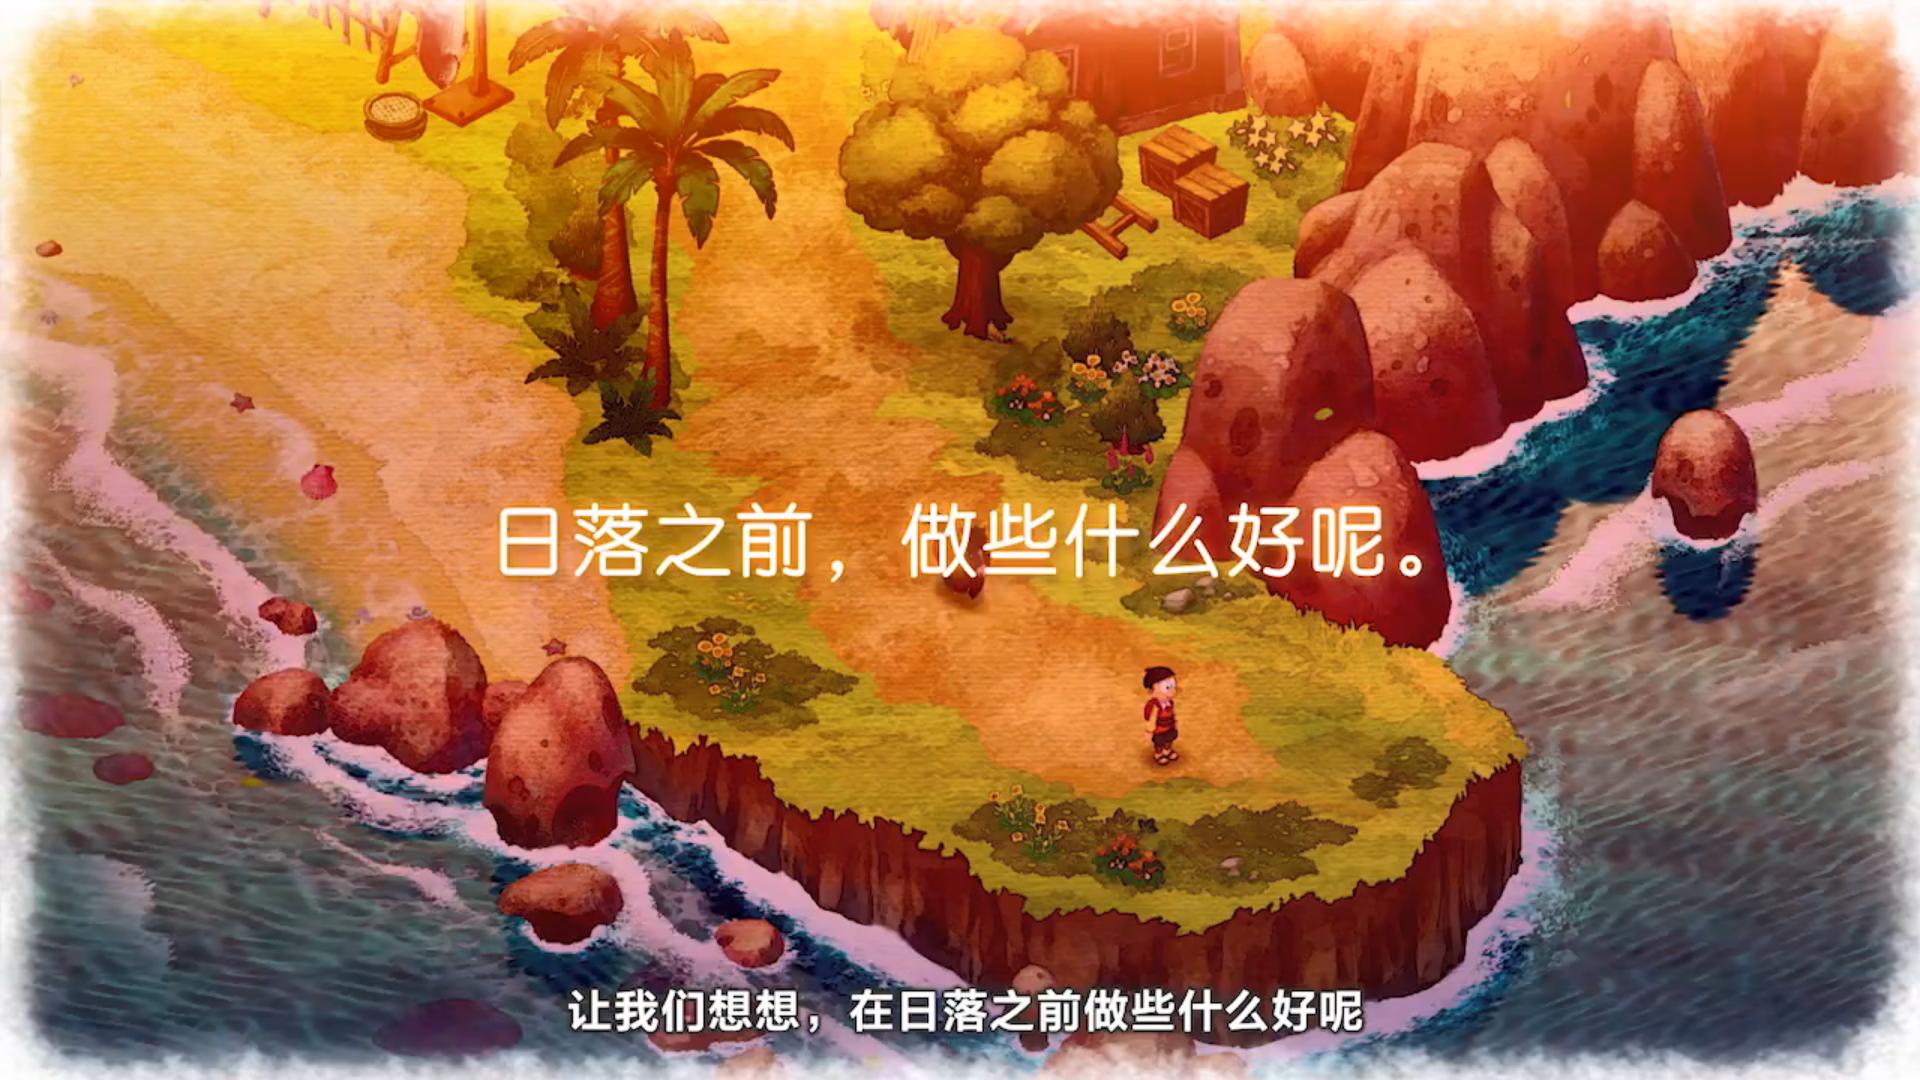 国行Switch《哆啦A梦牧场物语》预售开启 9月30日发售